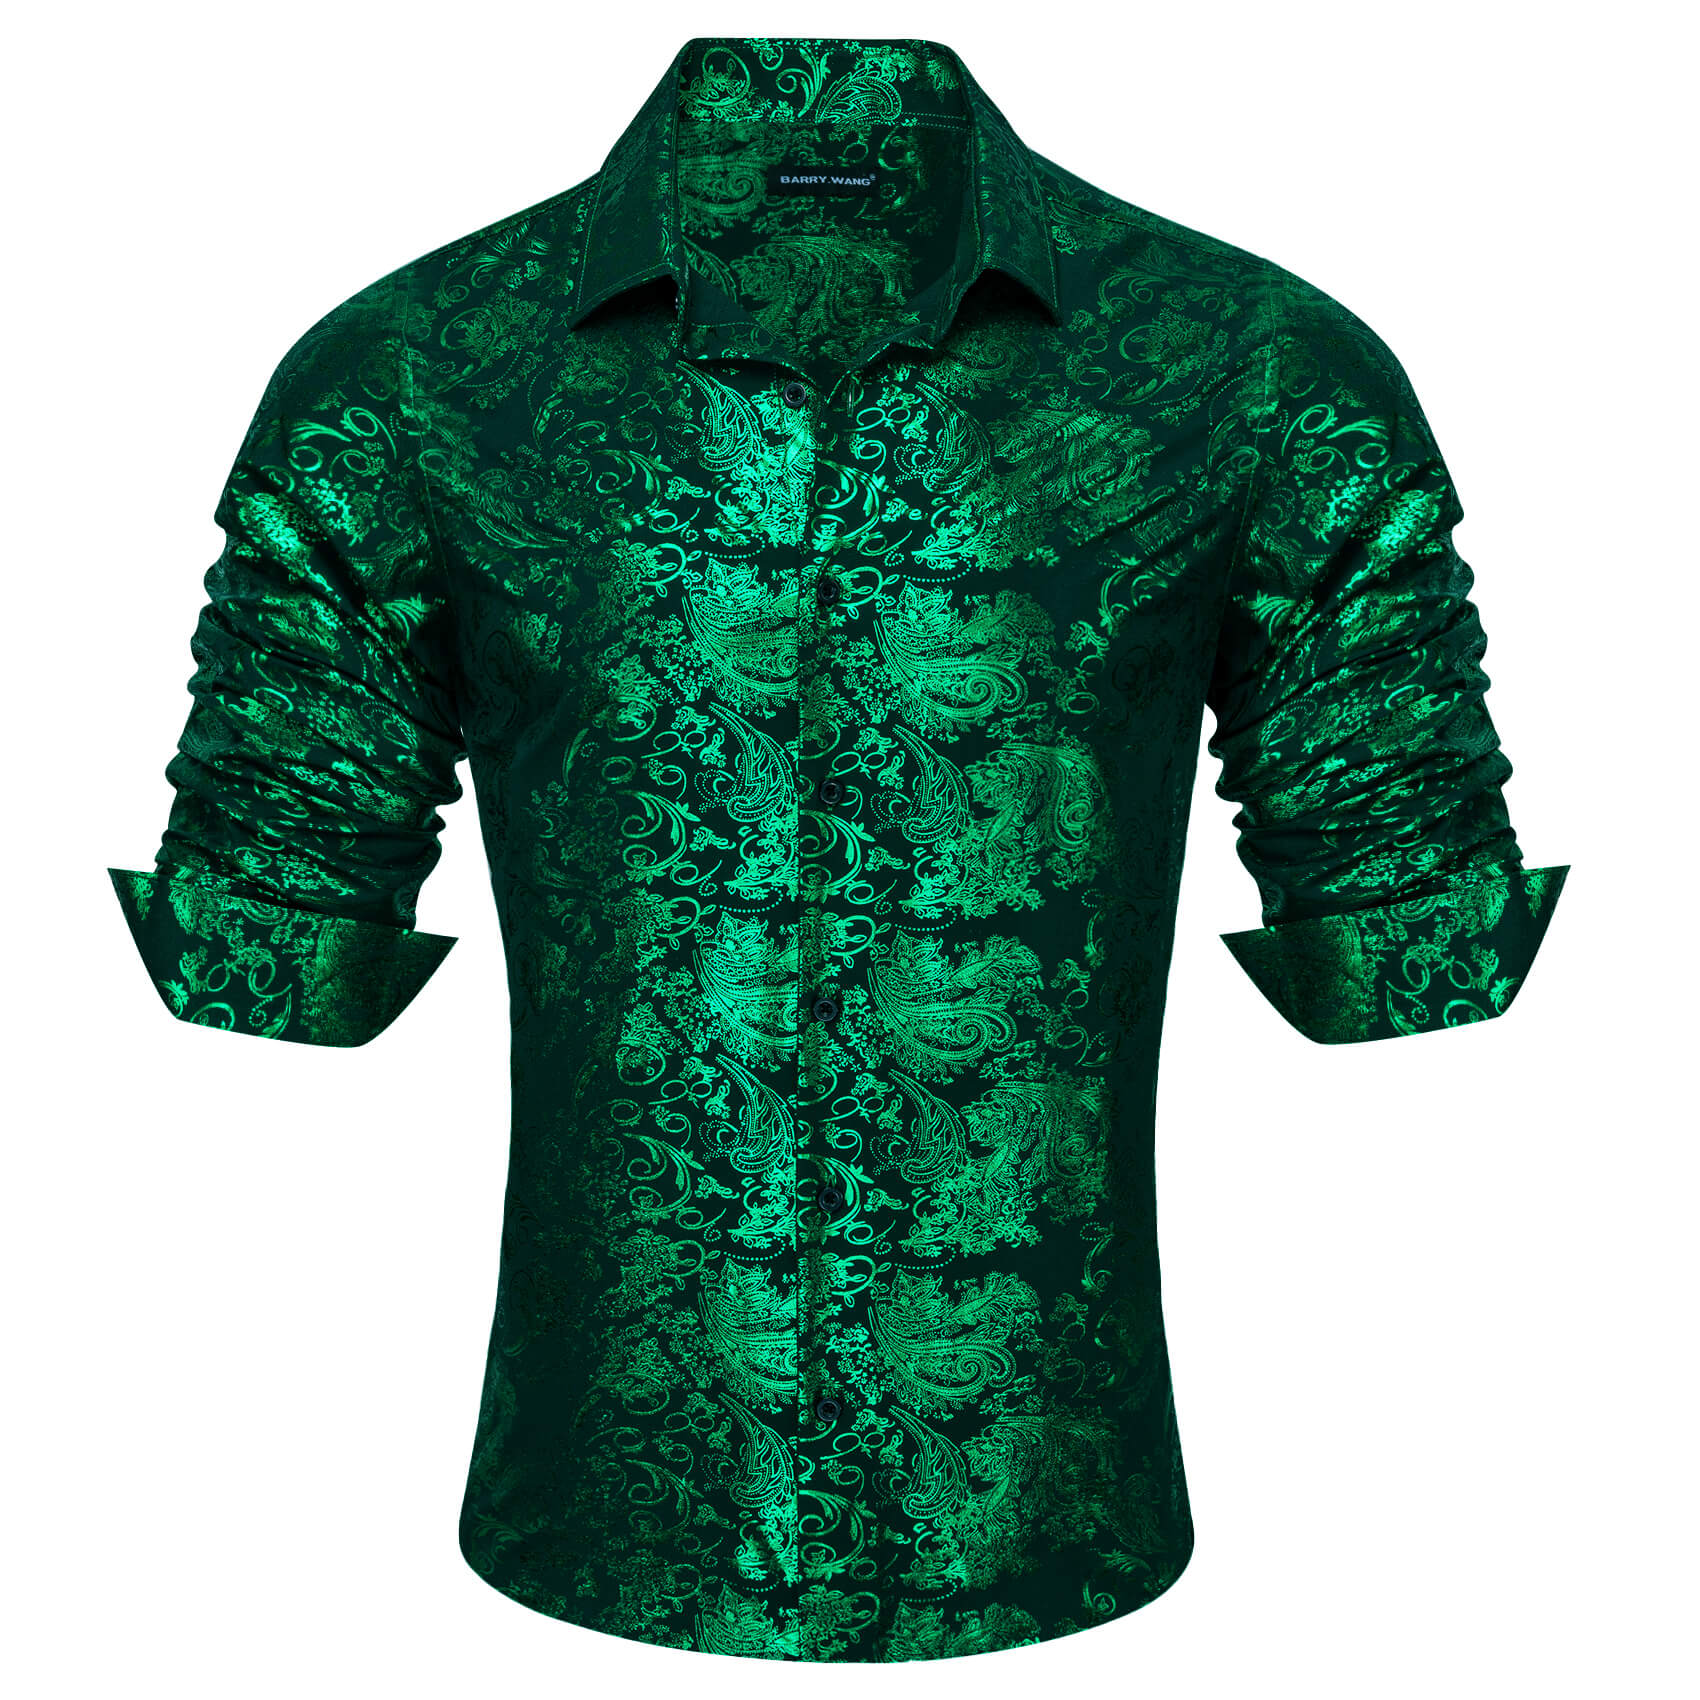 Barry.wang Men's Shirt Silk Emerald Green Bronzing Floral Jacquard Shirt